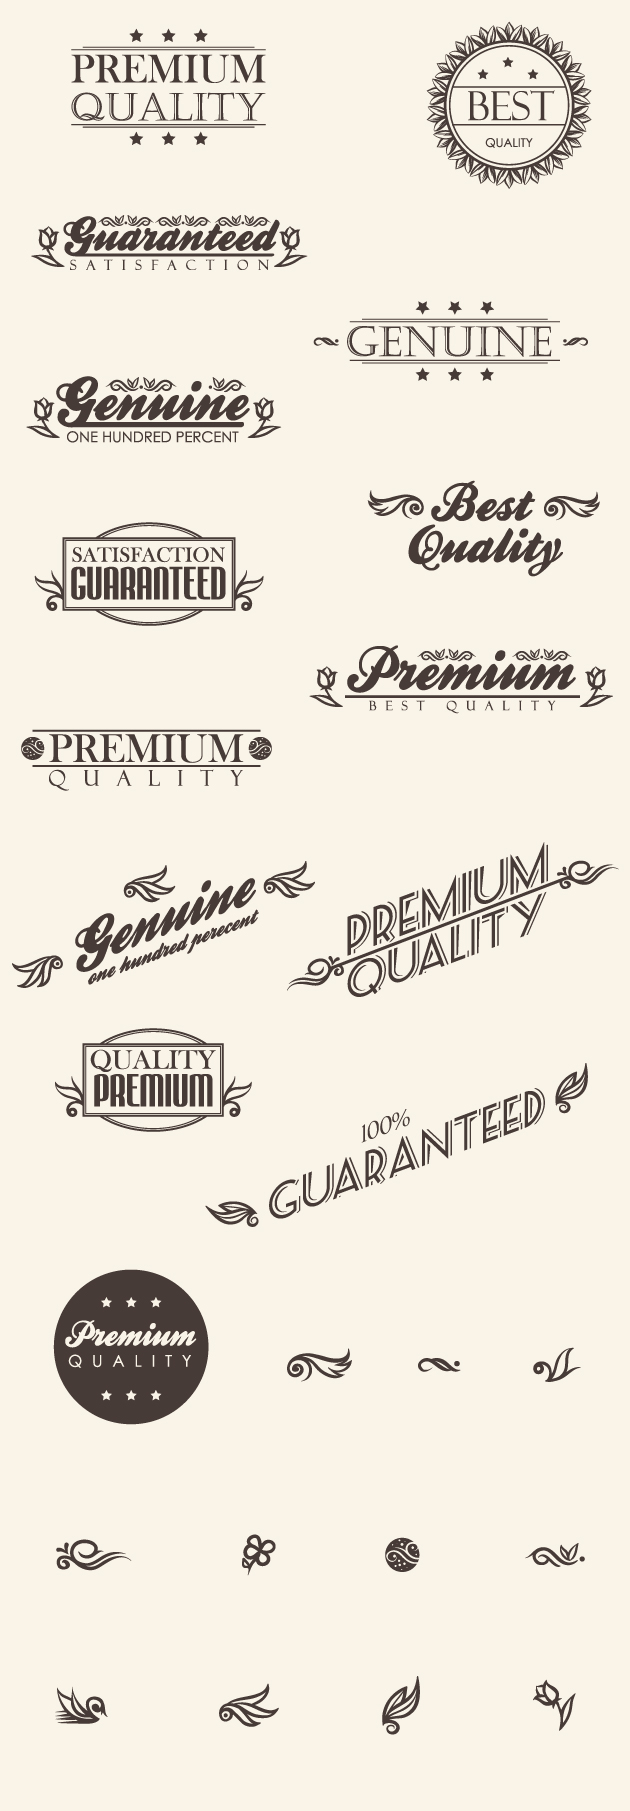 Premium Quality Signs 1 2